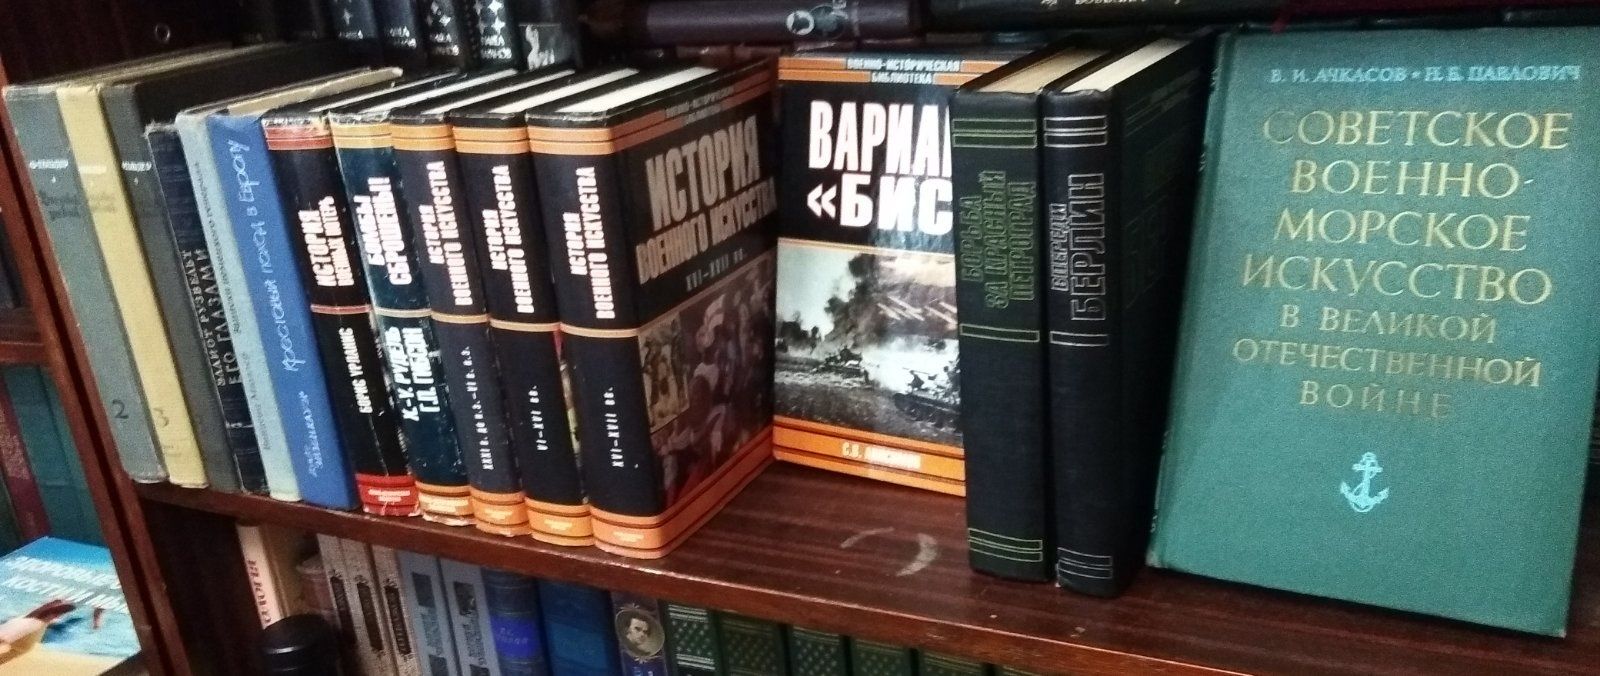 Военно-историческая библиотека - 11 книг